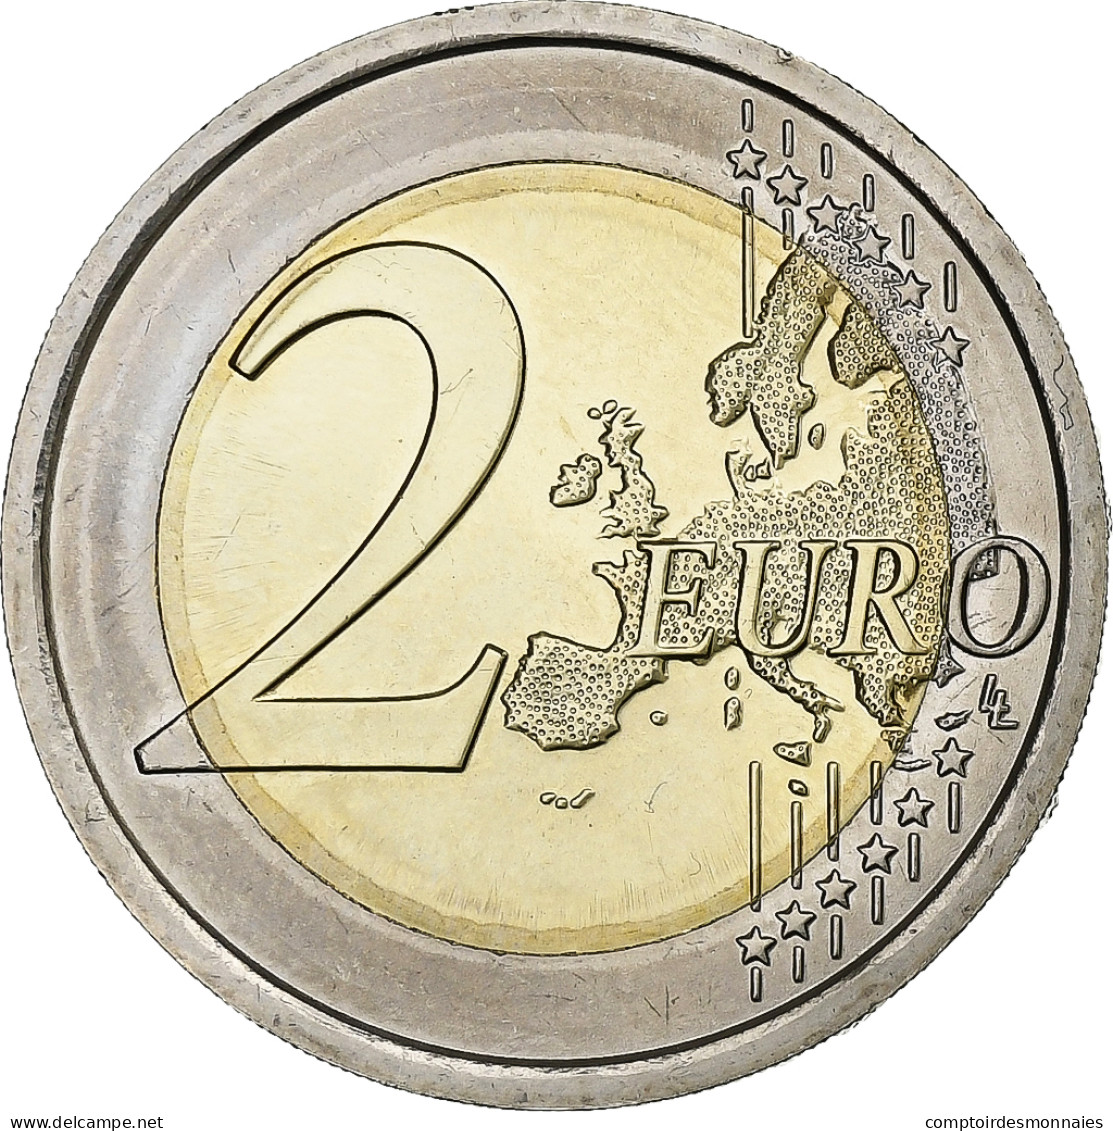 Italie, 2 Euro, 2019, Bimétallique, SPL - Italie